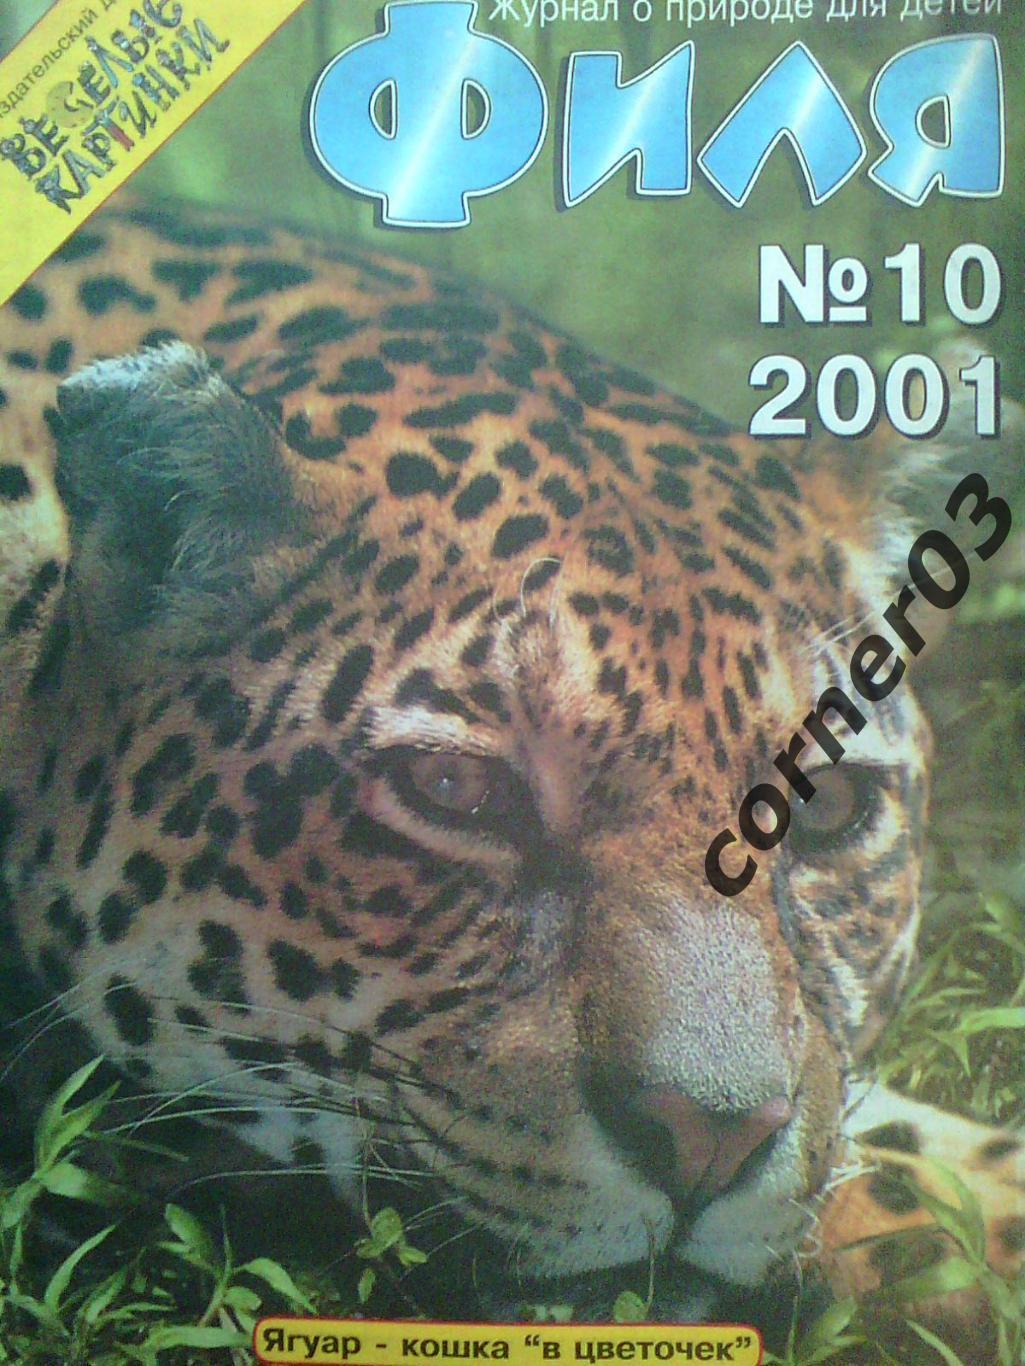 Журнал Филя №10 2001 год